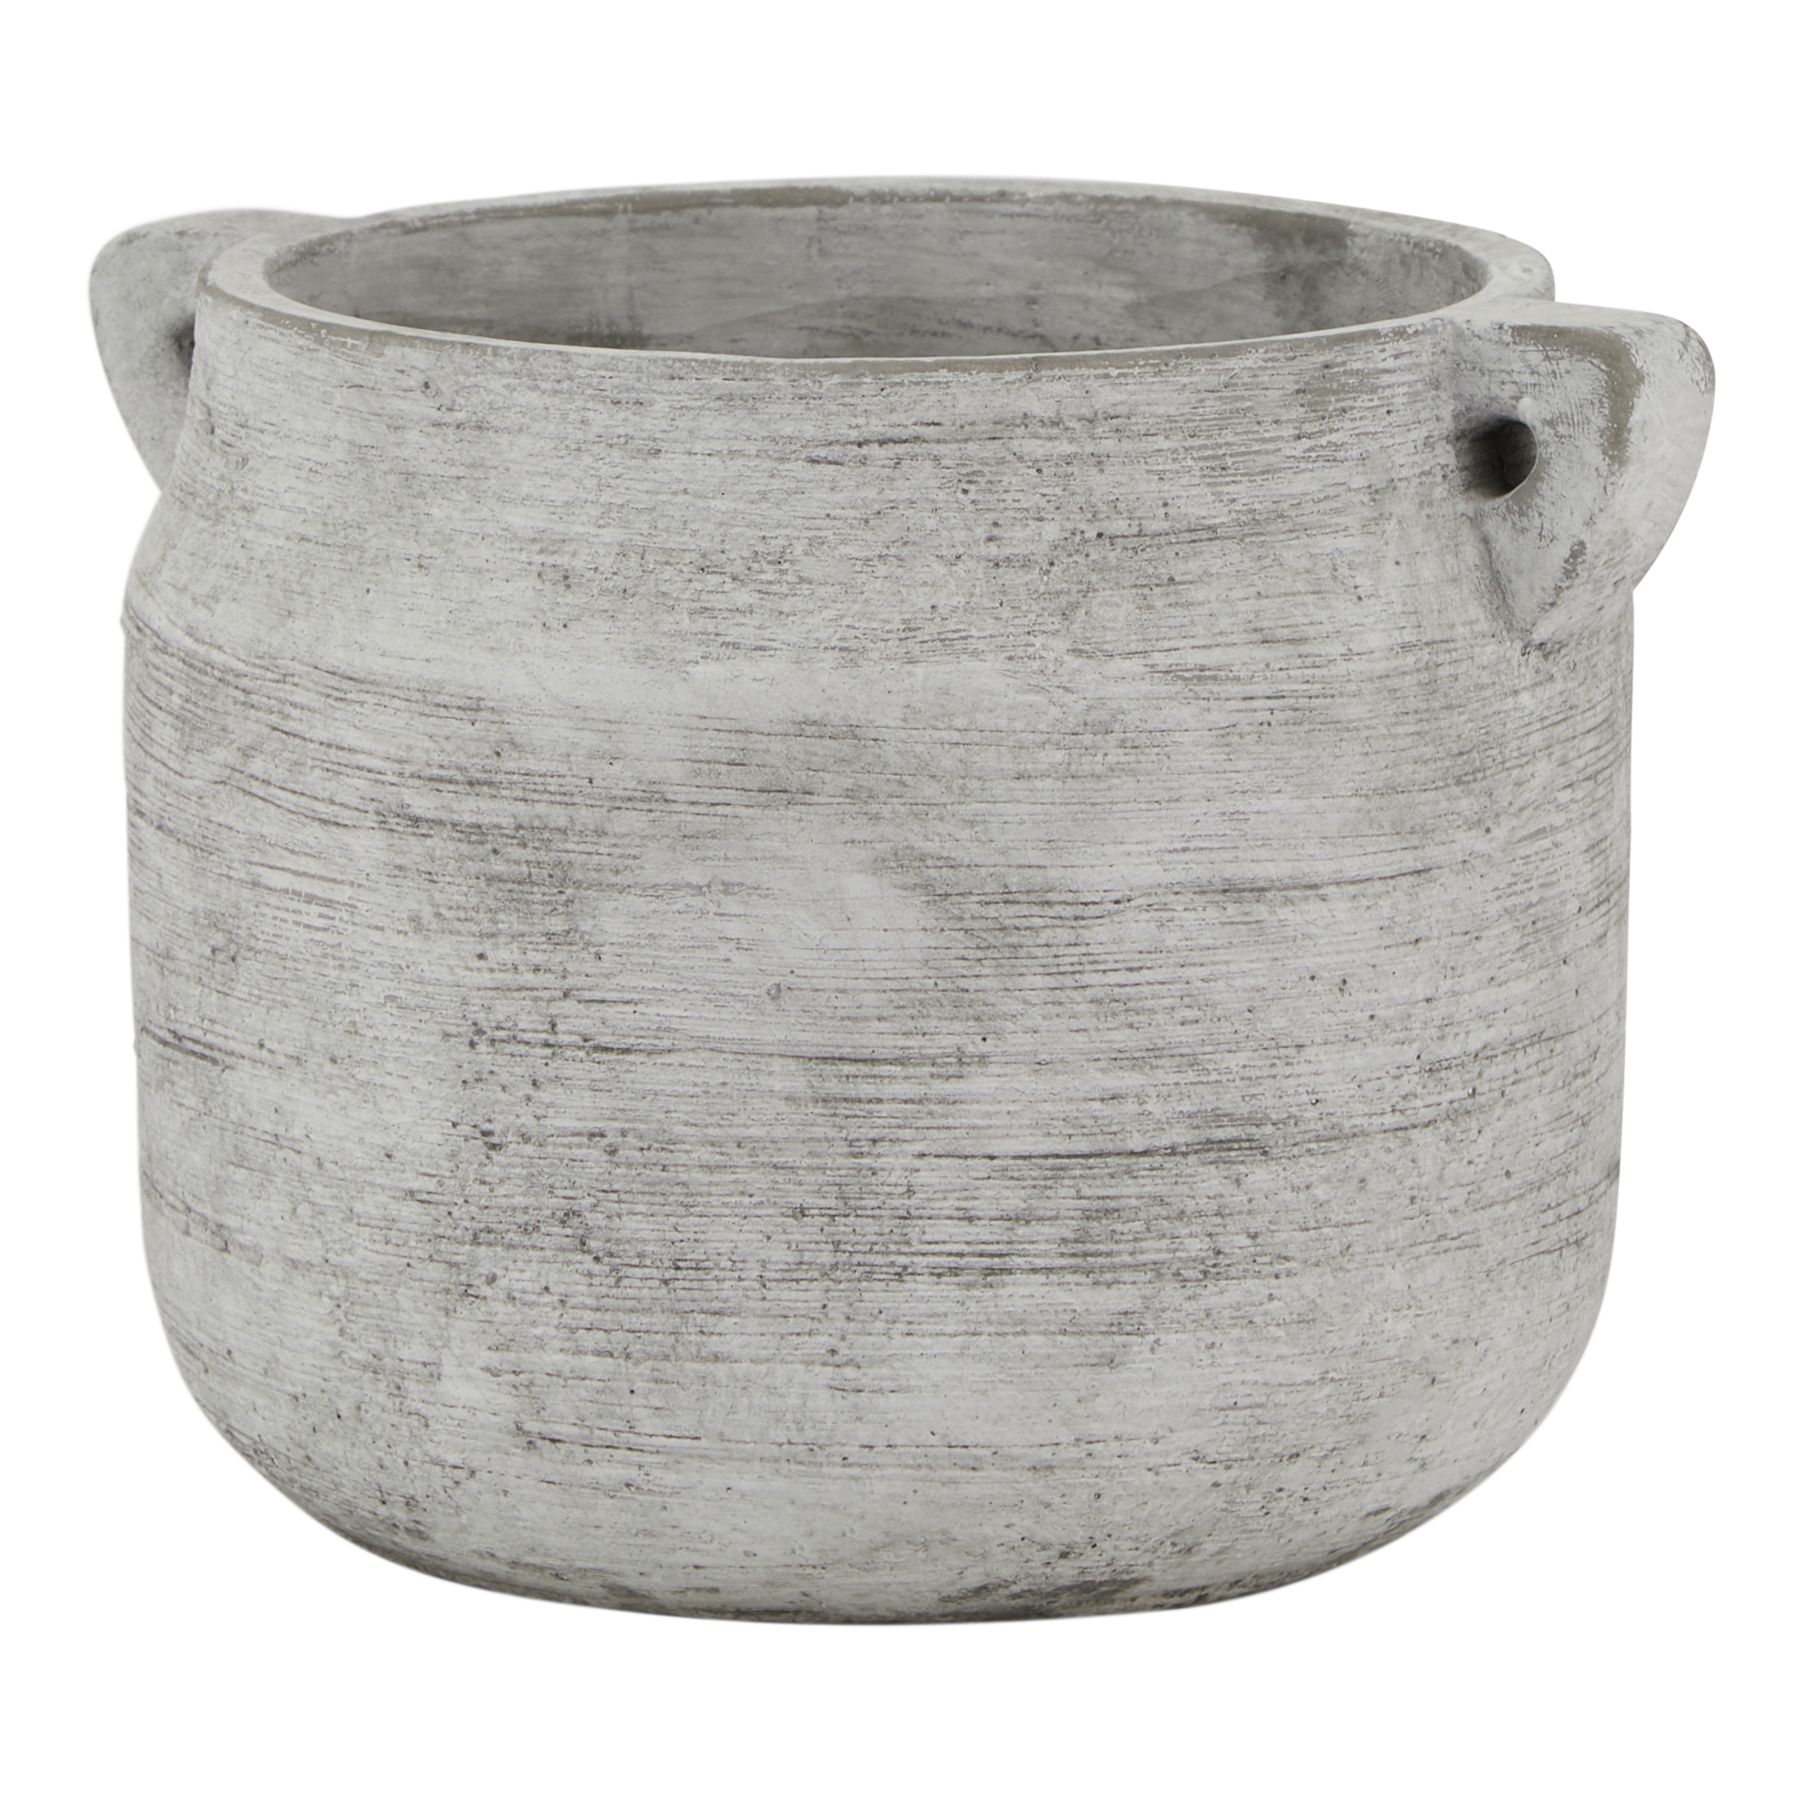 Athena Stone Hydria Pot - Image 1